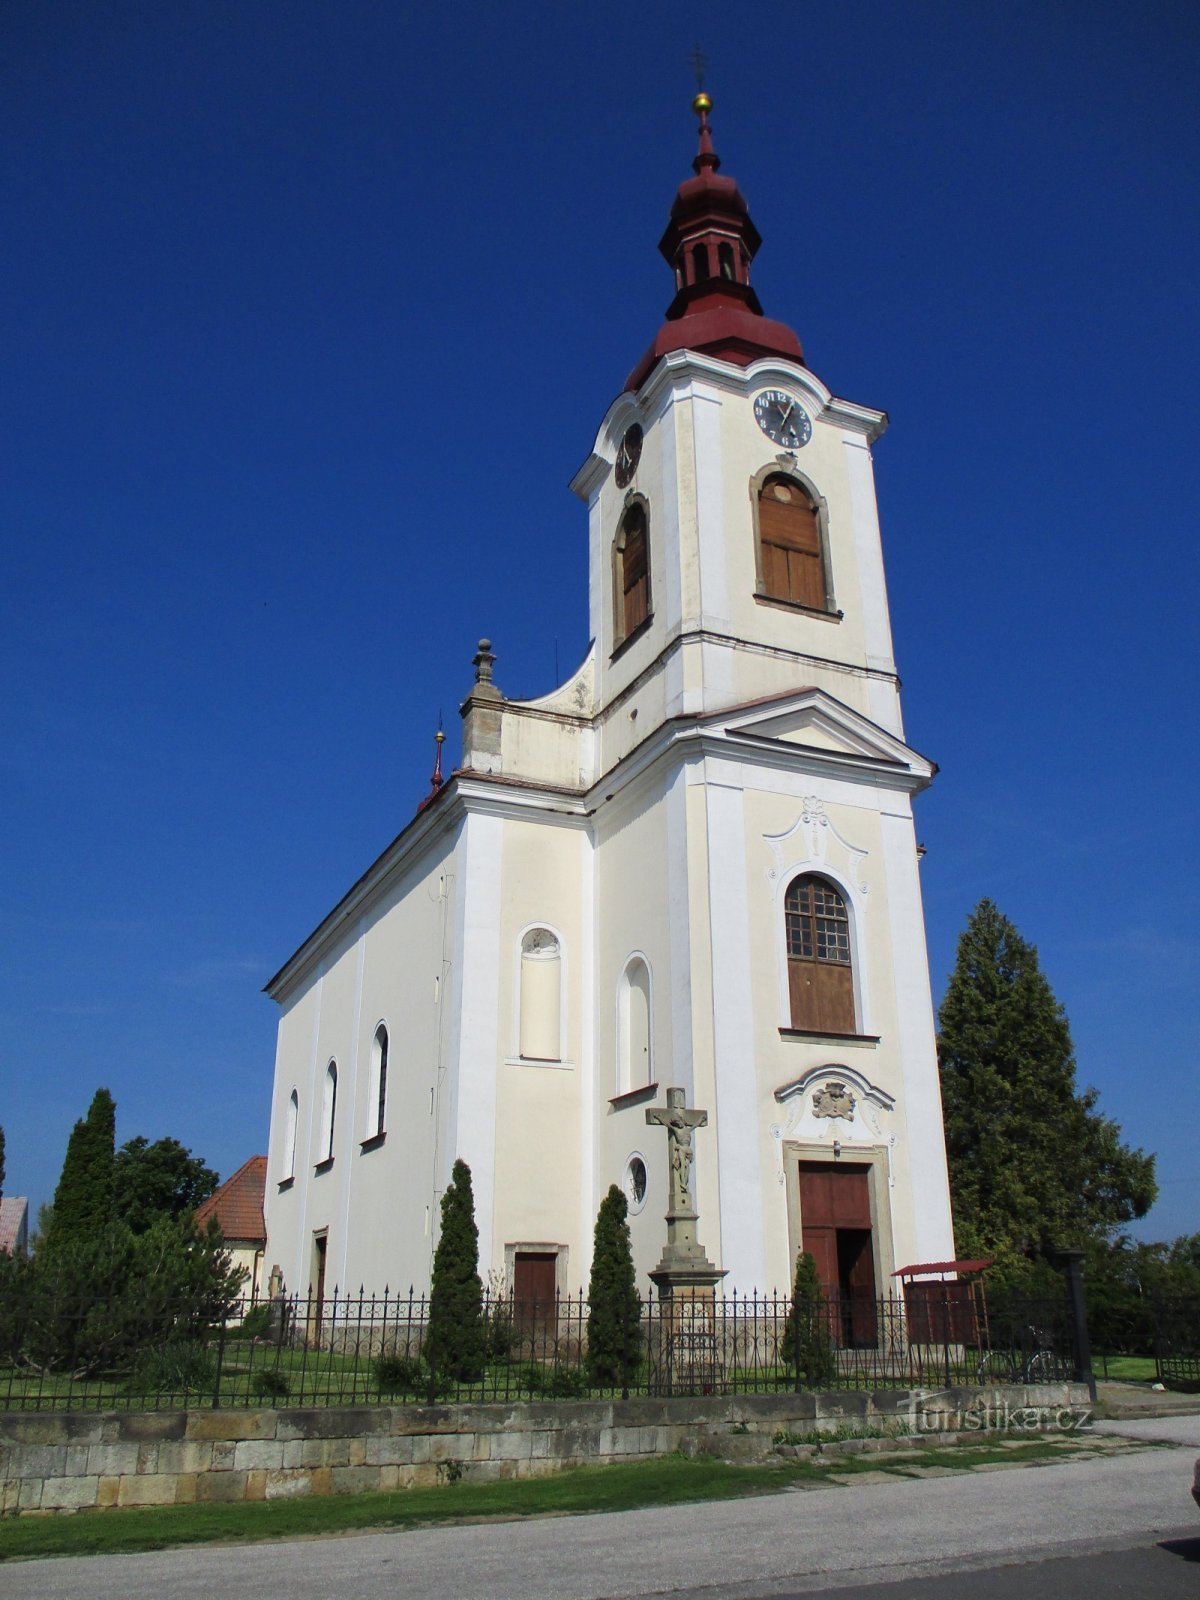 Церковь св. Екатерина, девы и мученицы (Ческе Мезиржичи)